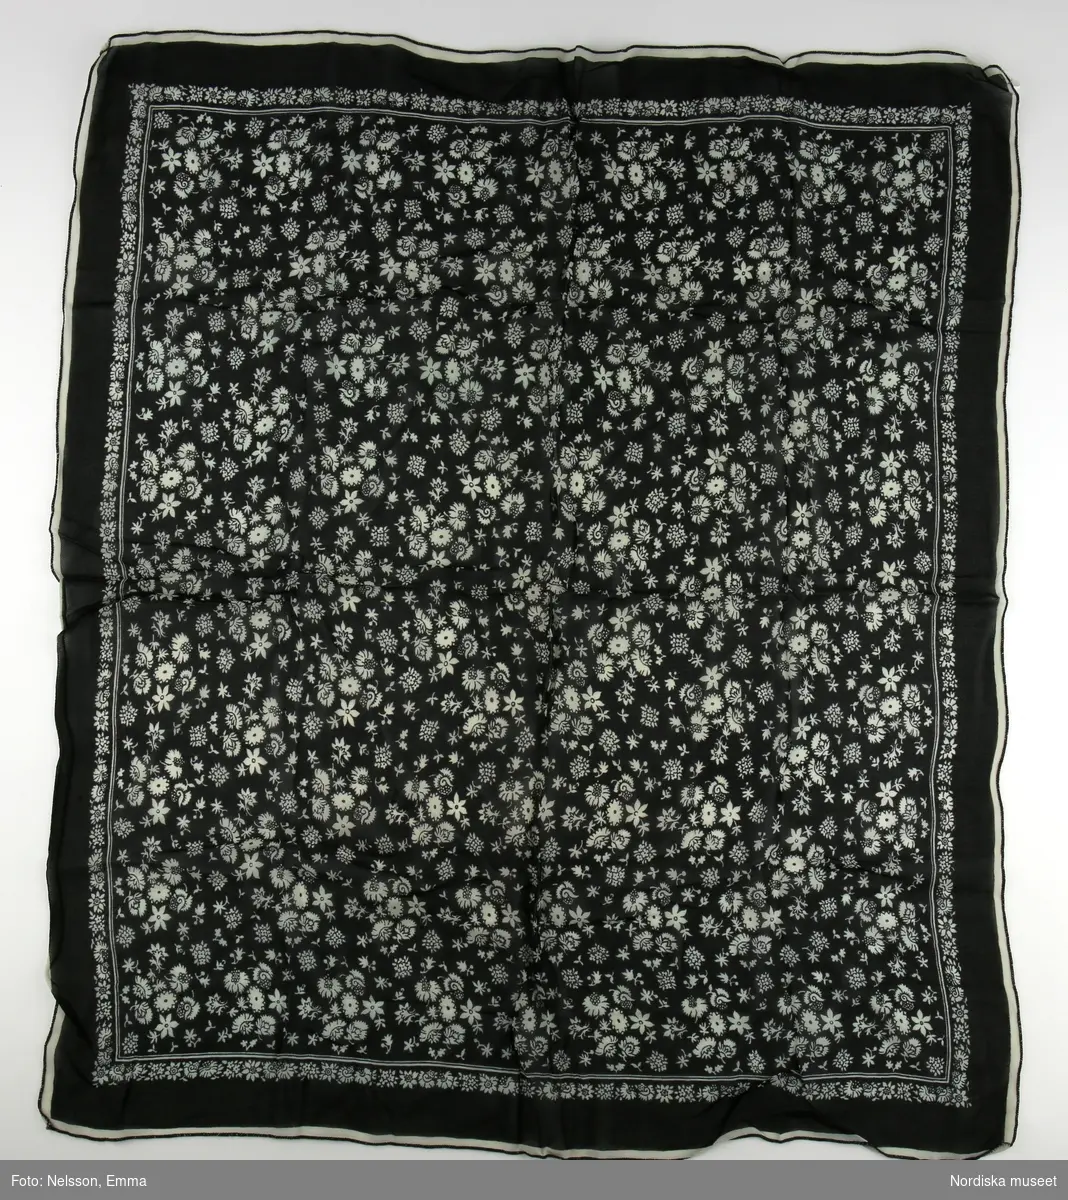 Tunn svart scarf med små vita blommor, i kanten på rad och i mittspegeln strödda.

/Magdalena Fick 2012-05-21